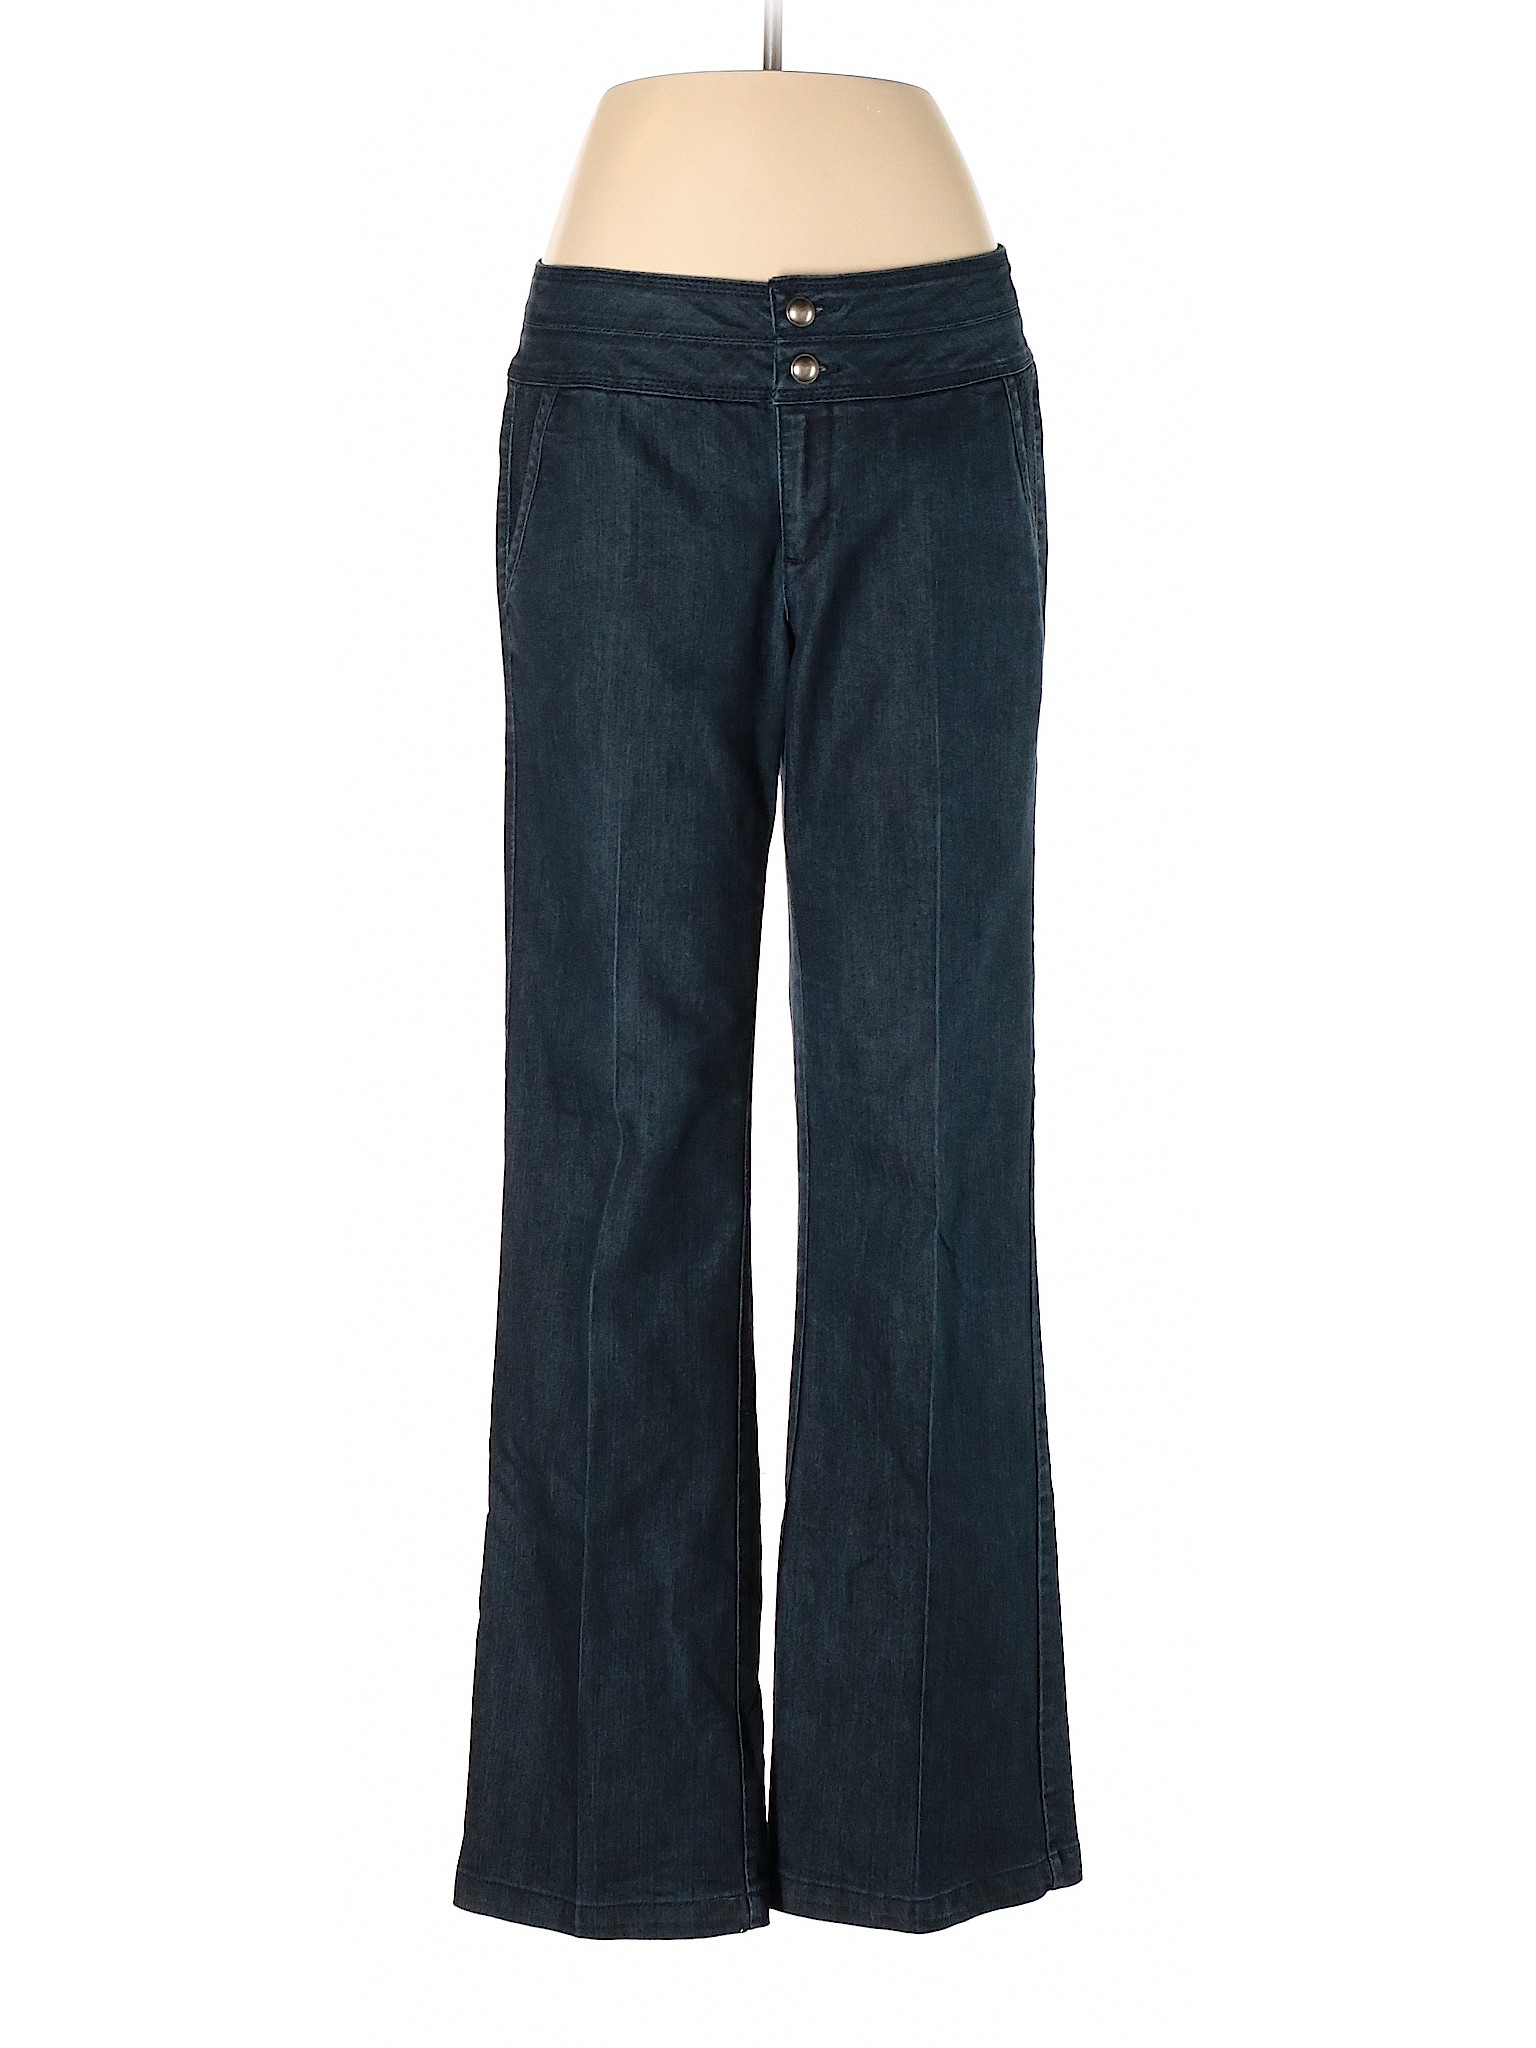 Roz & Ali Women Blue Jeans 8 | eBay